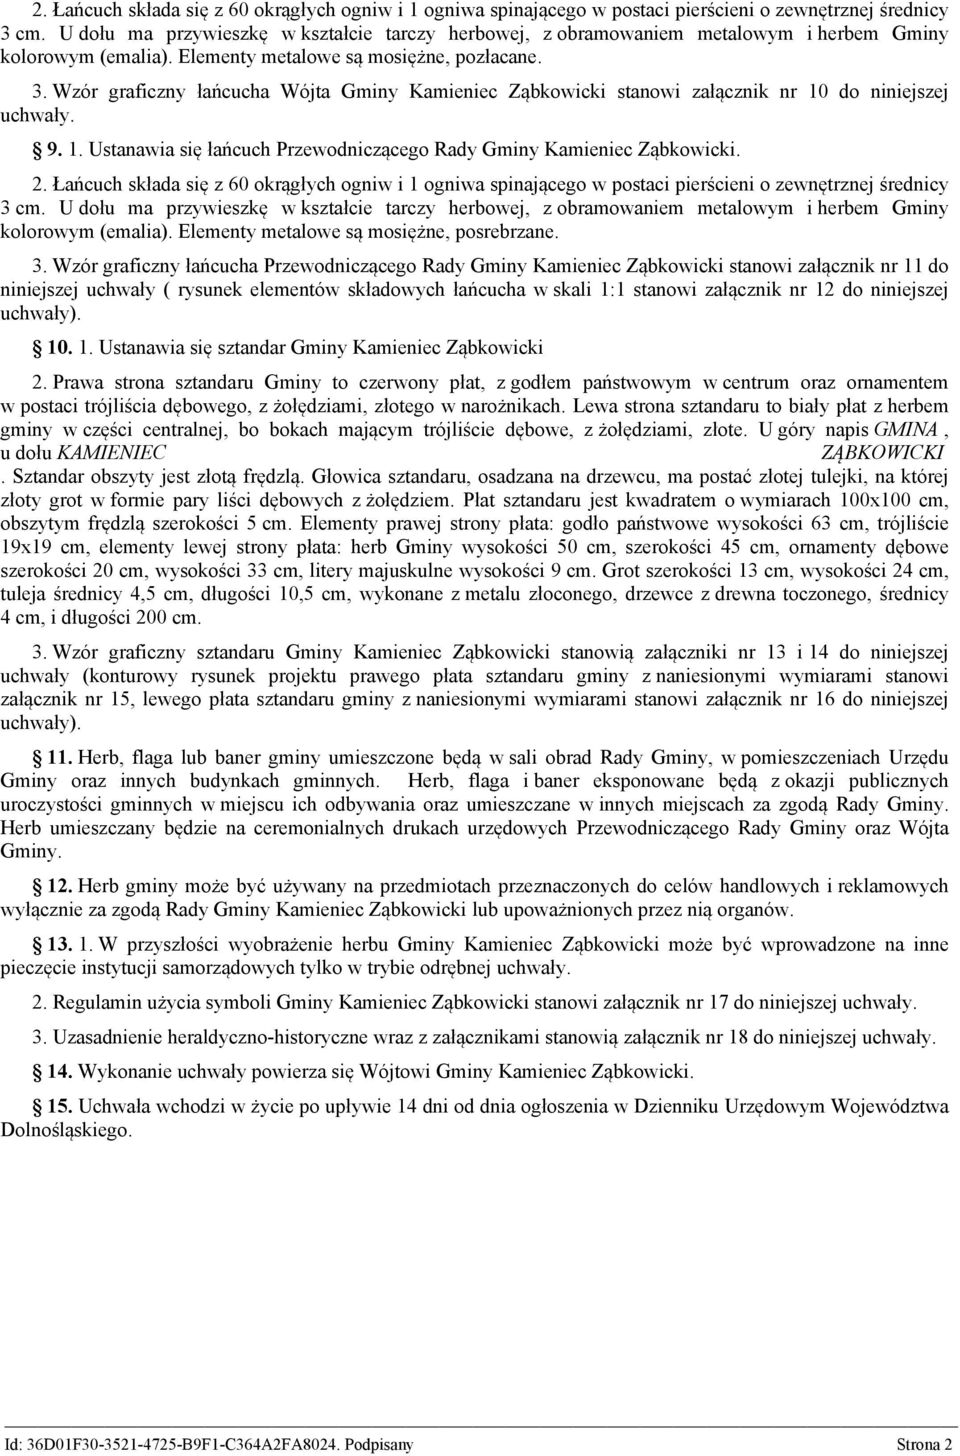 Wzór graficzny łańcucha Wójta Gminy Kamieniec Ząbkowicki stanowi załącznik nr 10 do niniejszej uchwały. 9. 1. Ustanawia się łańcuch Przewodniczącego Rady Gminy Kamieniec Ząbkowicki.